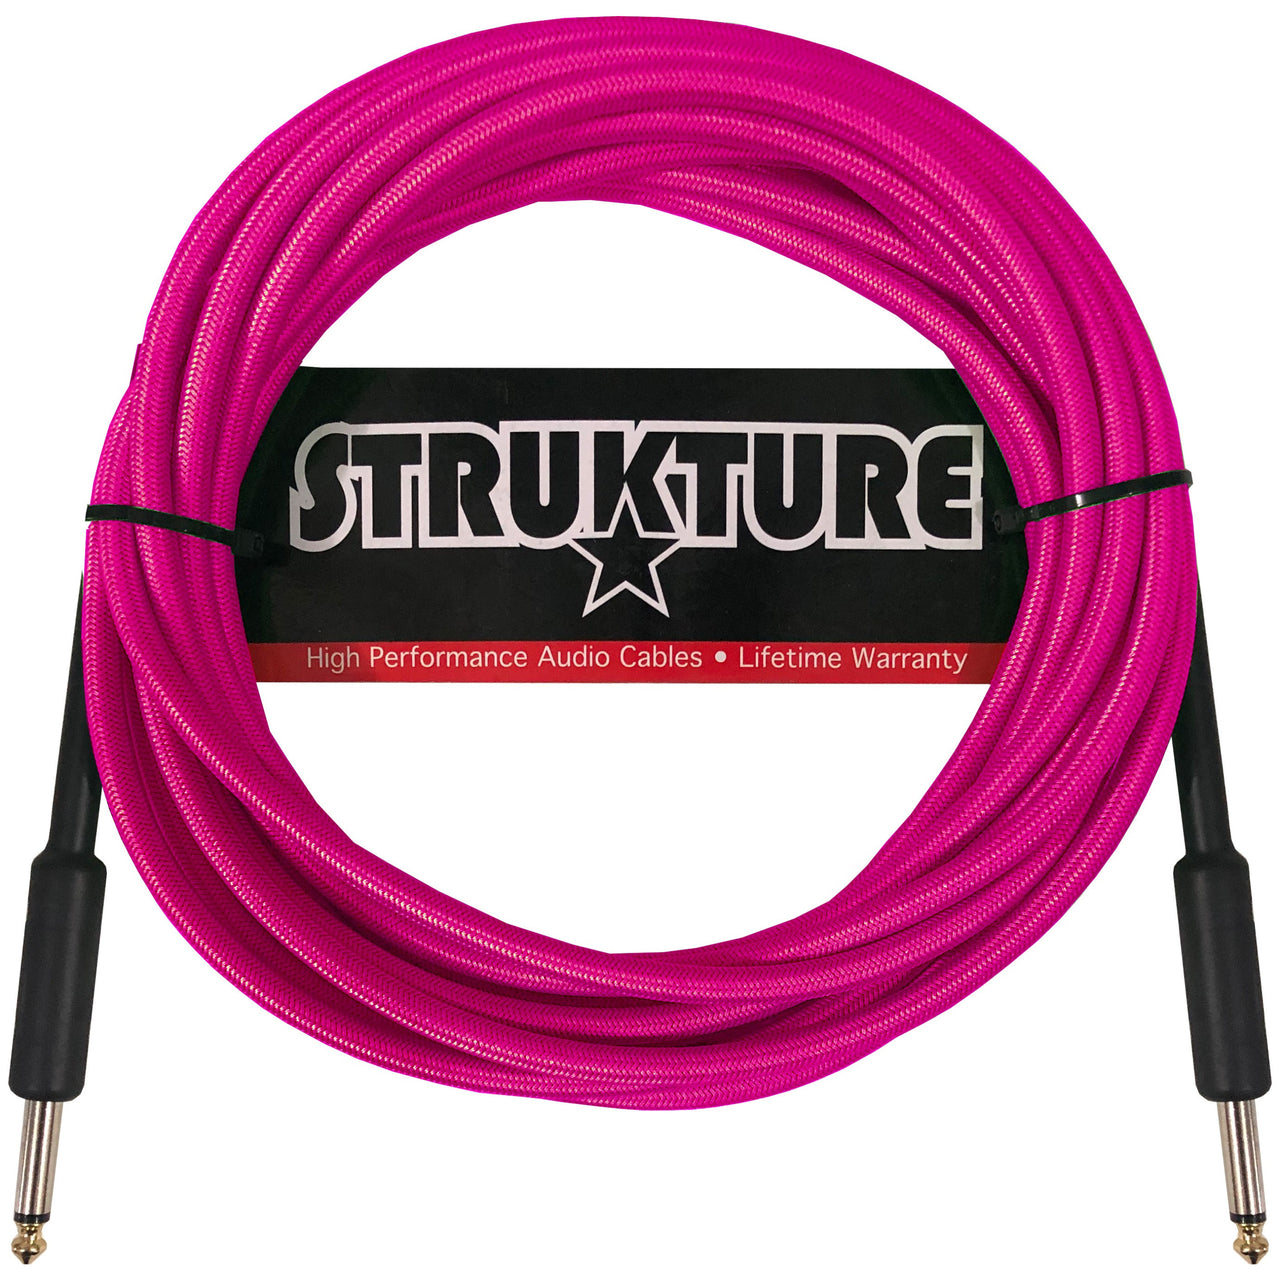 Cable Strukture P/instrumento 5.7mt Textil Rosa Neon, Sc186np